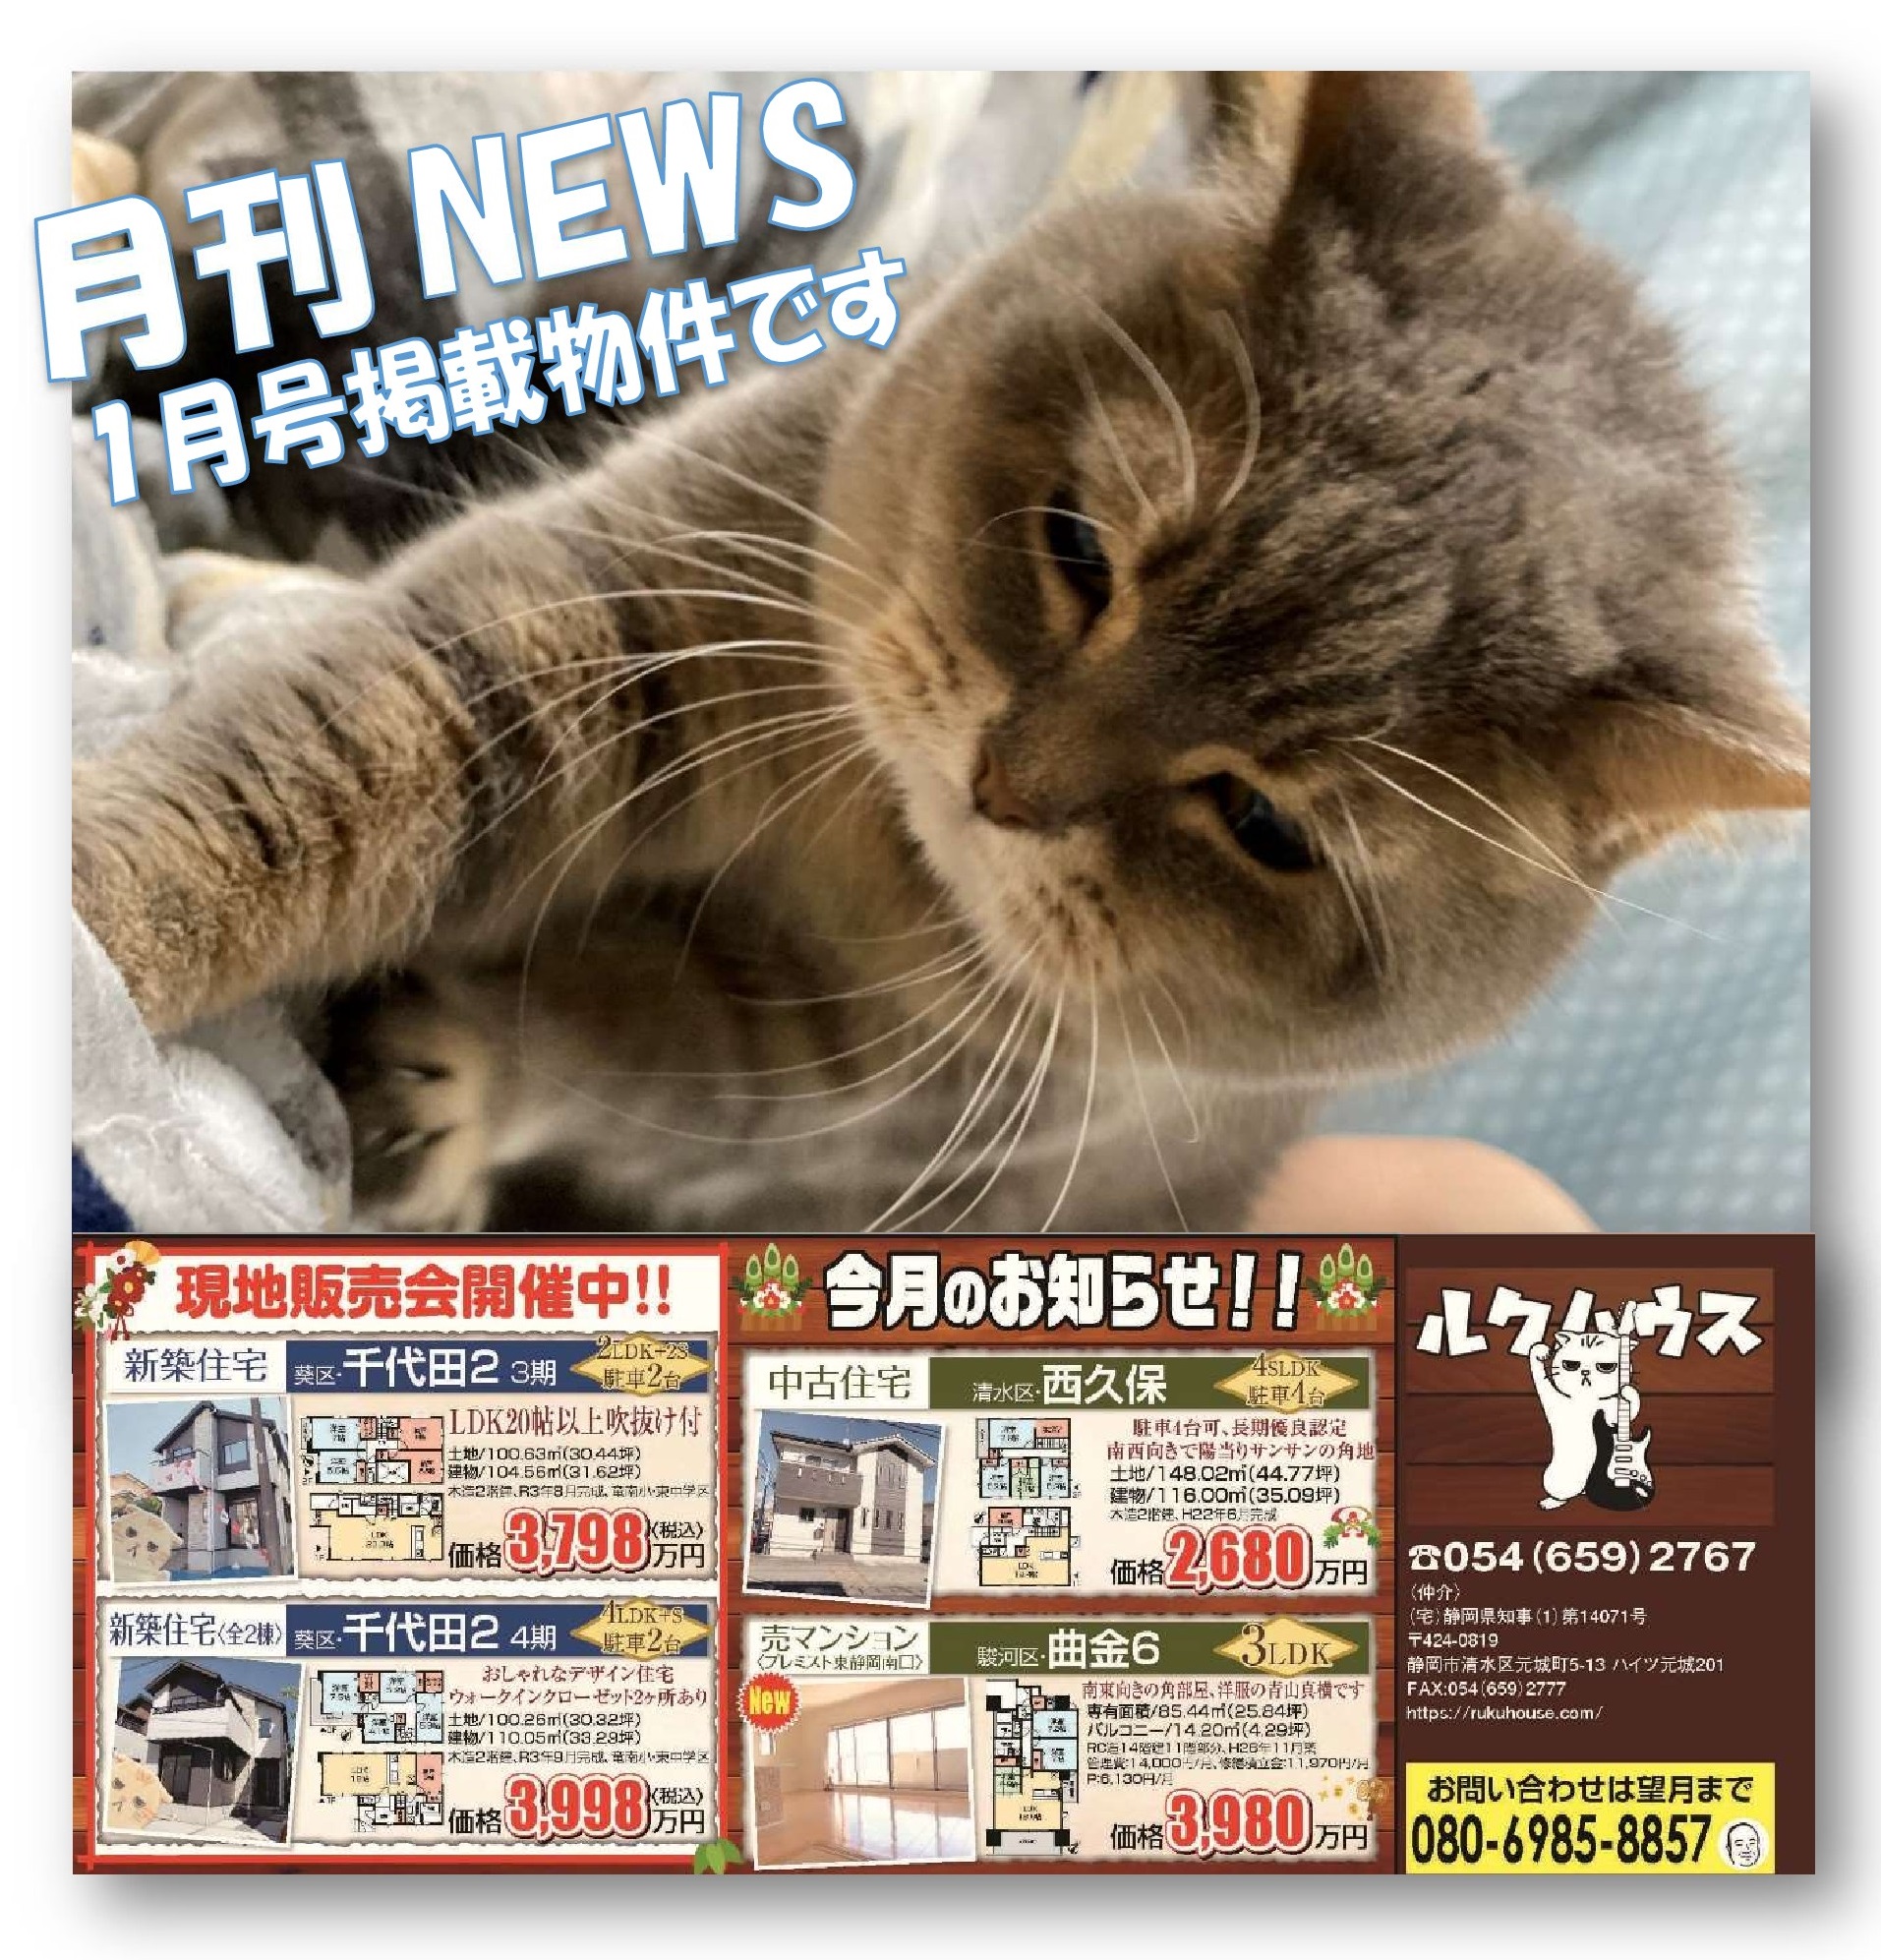 ■月刊NEWS・1月号掲載物件■